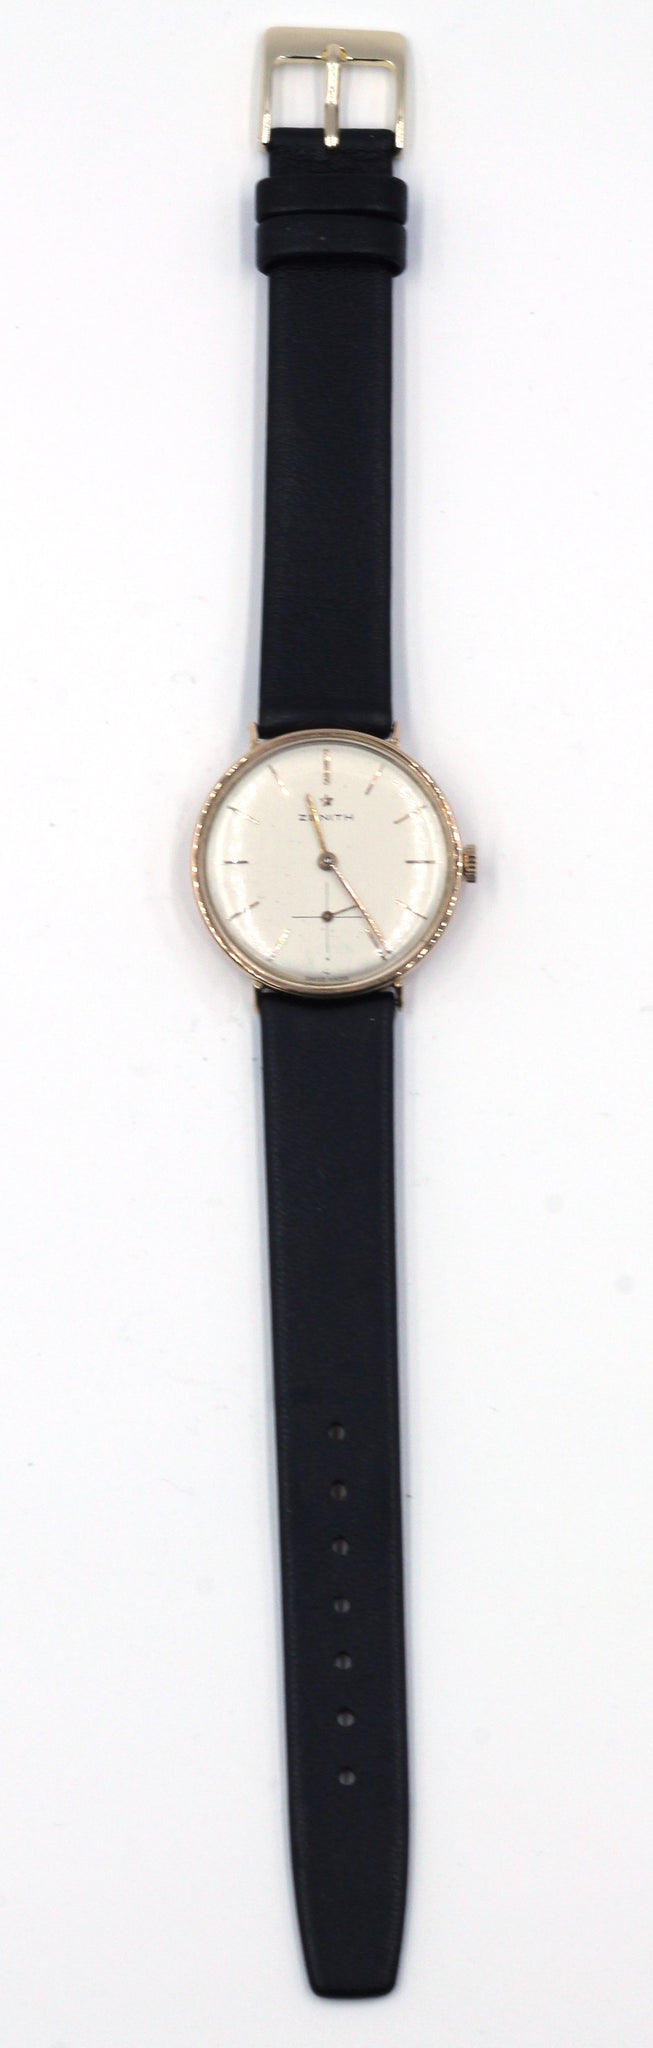 Vintage 14K Gold Zenith Watch, SOLD